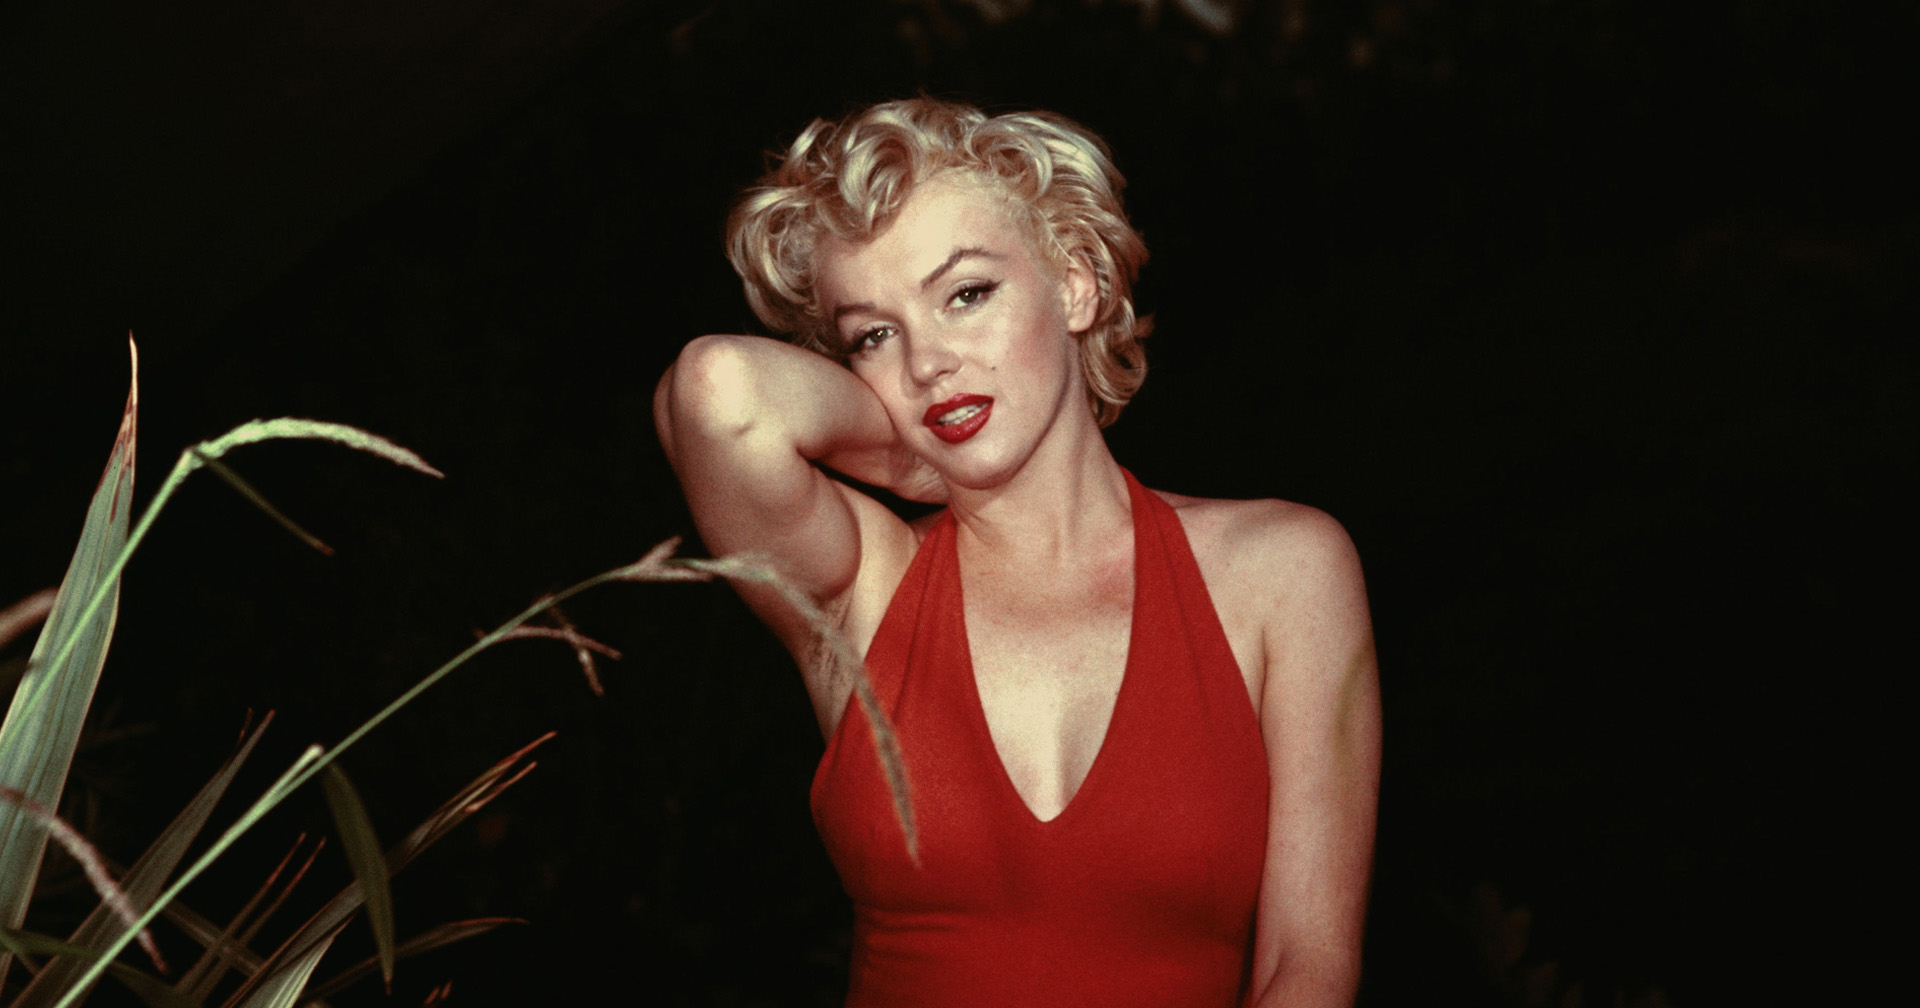 จริง ๆ แล้ว Marilyn Monroe ไม่ได้ผมสีบลอนด์มาตั้งแต่เกิด